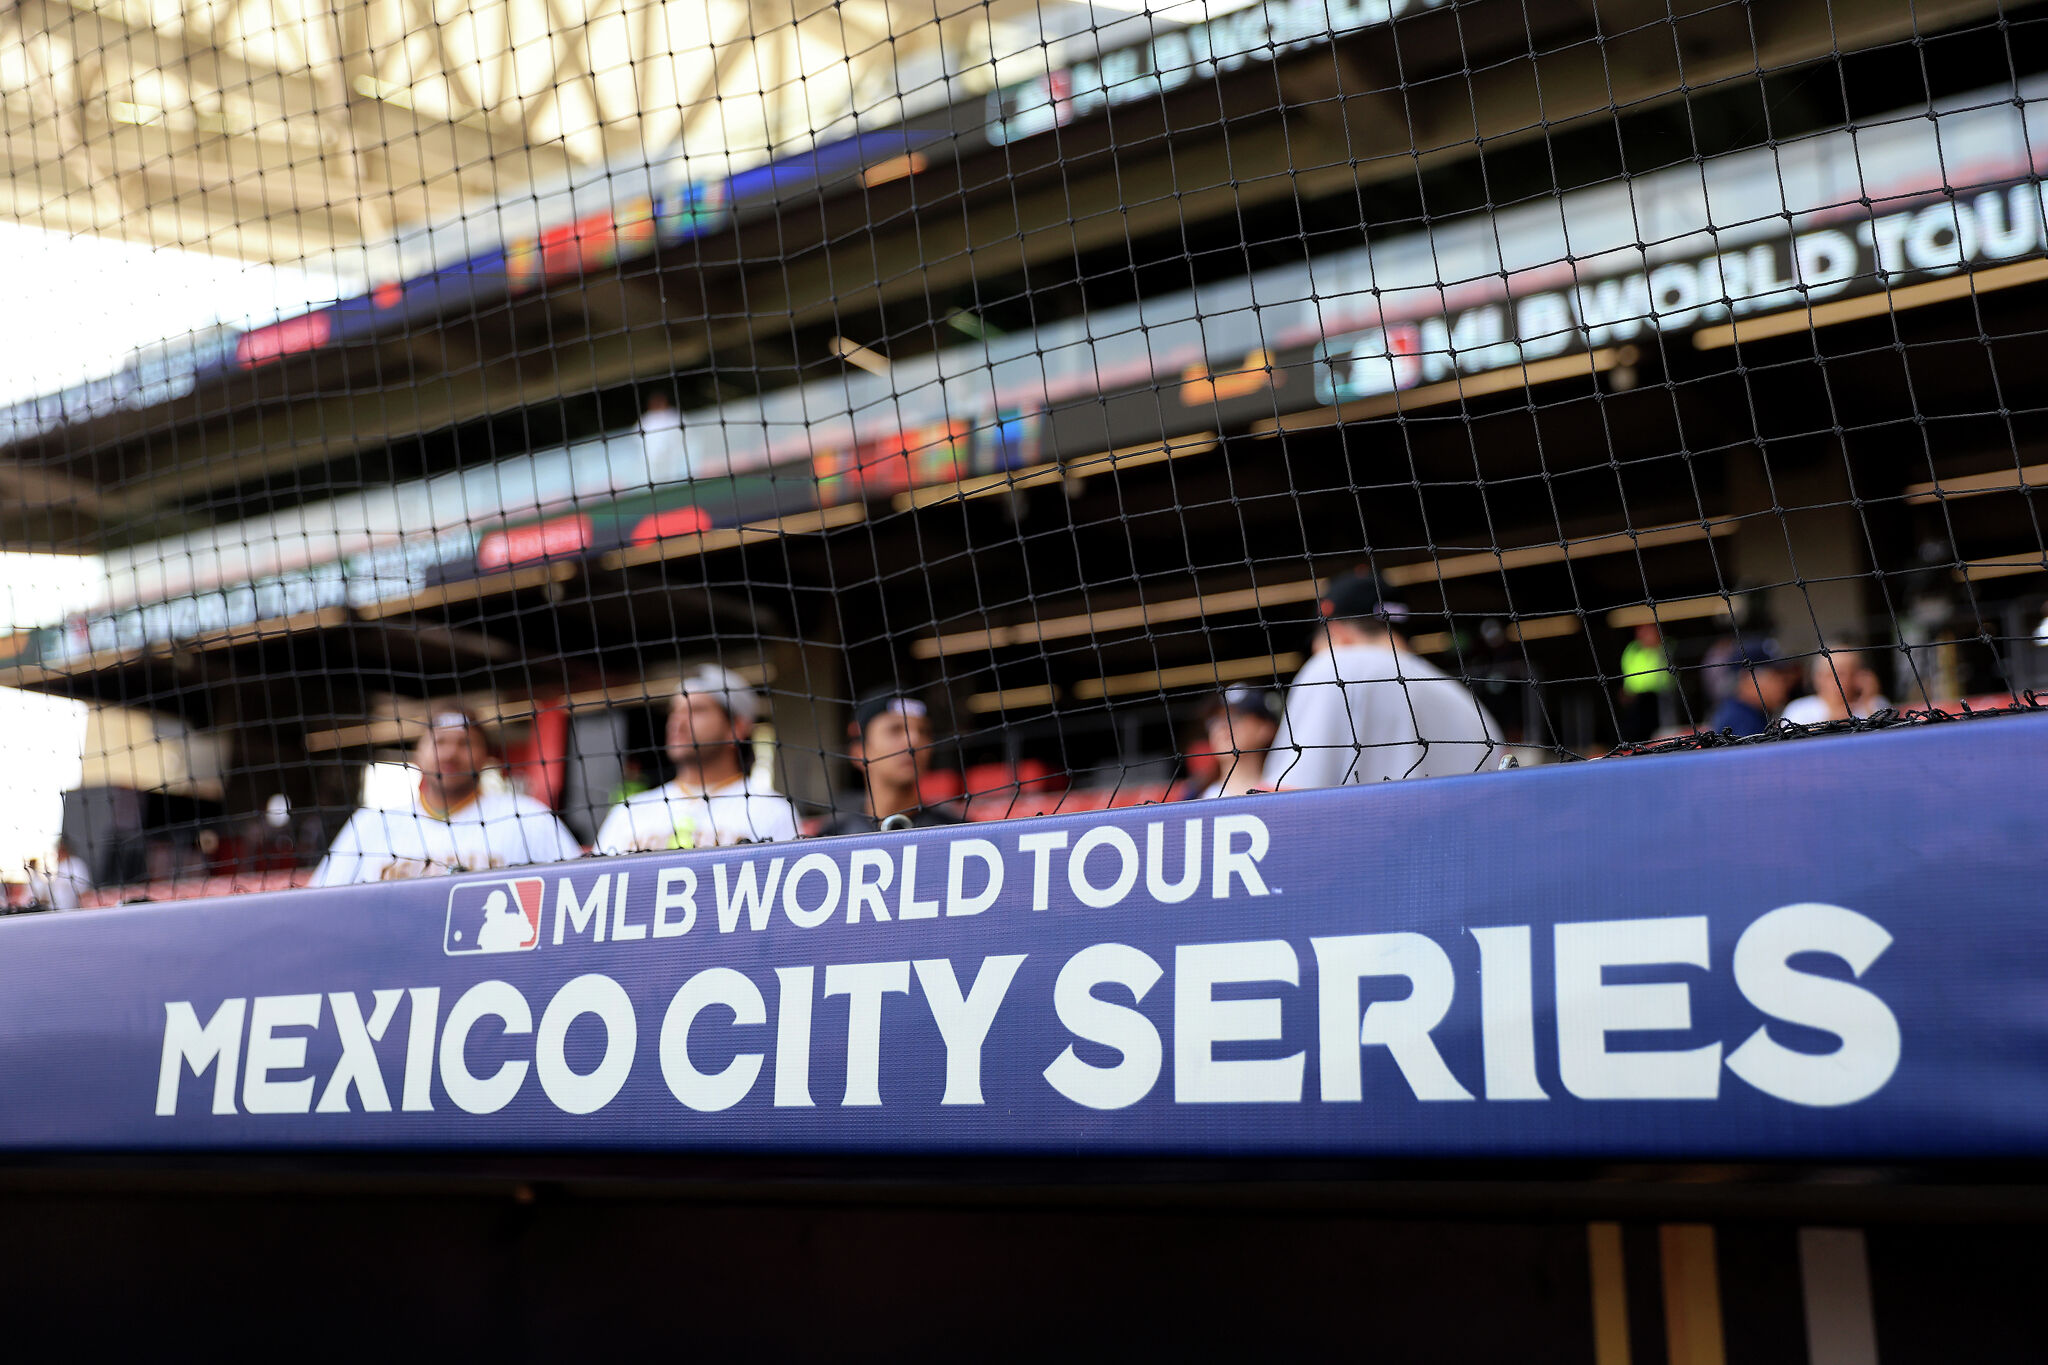 Los boletos de los Astros para Ciudad de México vs. Rockies saldrán a la venta pronto